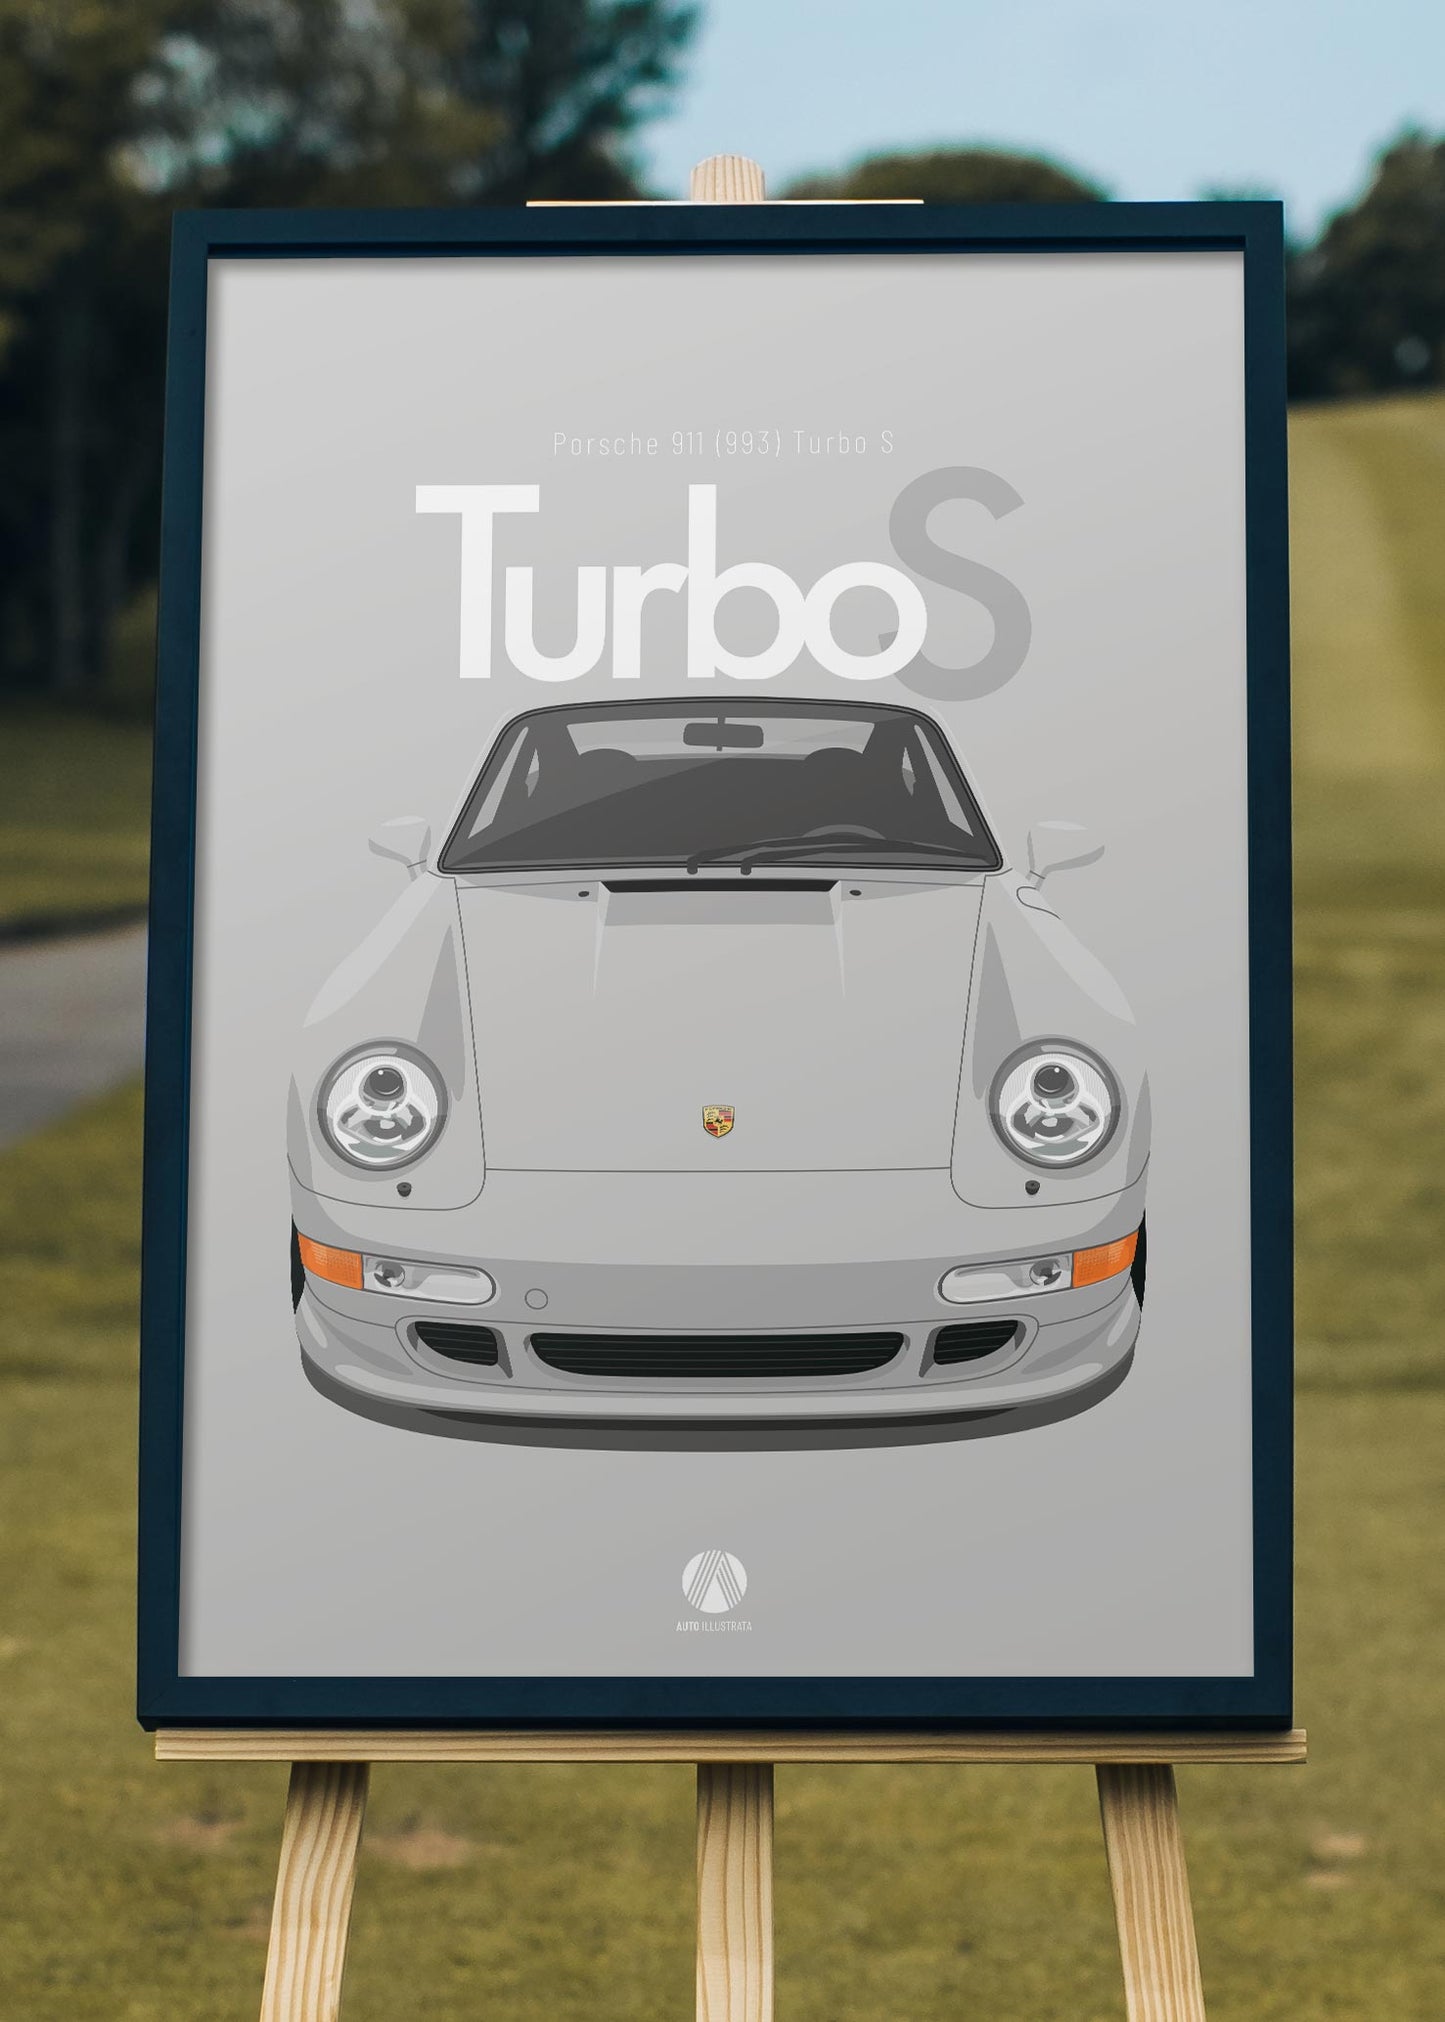 1997 Porsche 911 (993) Turbo S Polar Silver - poster print